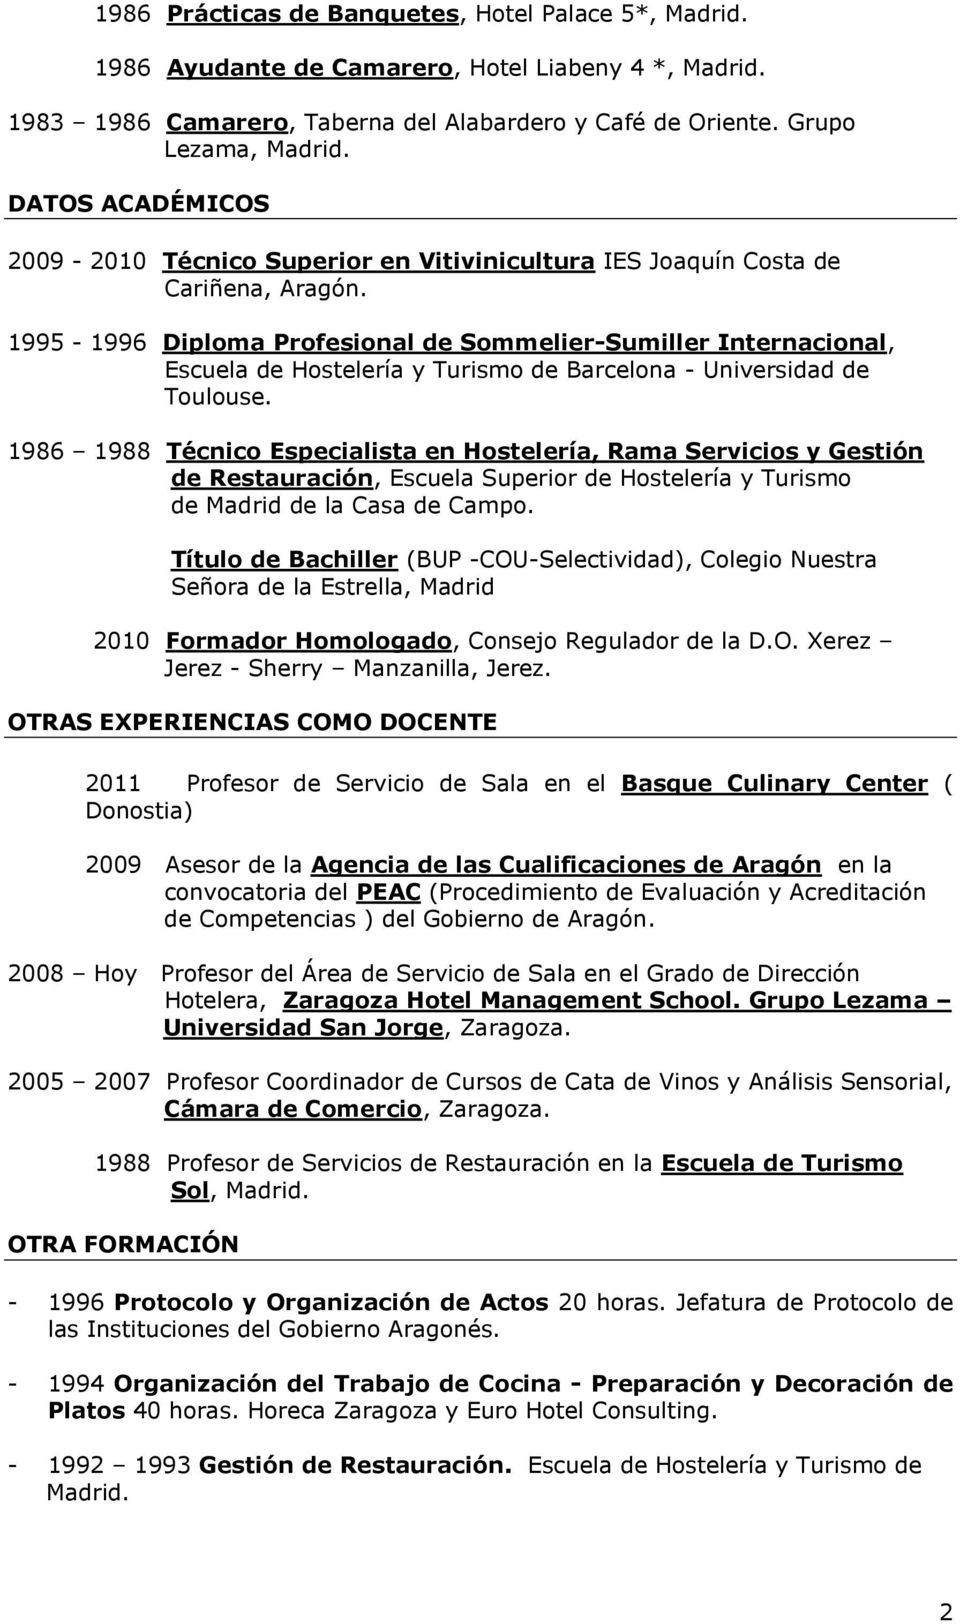 1995-1996 Diploma Profesional de Sommelier-Sumiller Internacional, Escuela de Hostelería y Turismo de Barcelona - Universidad de Toulouse.